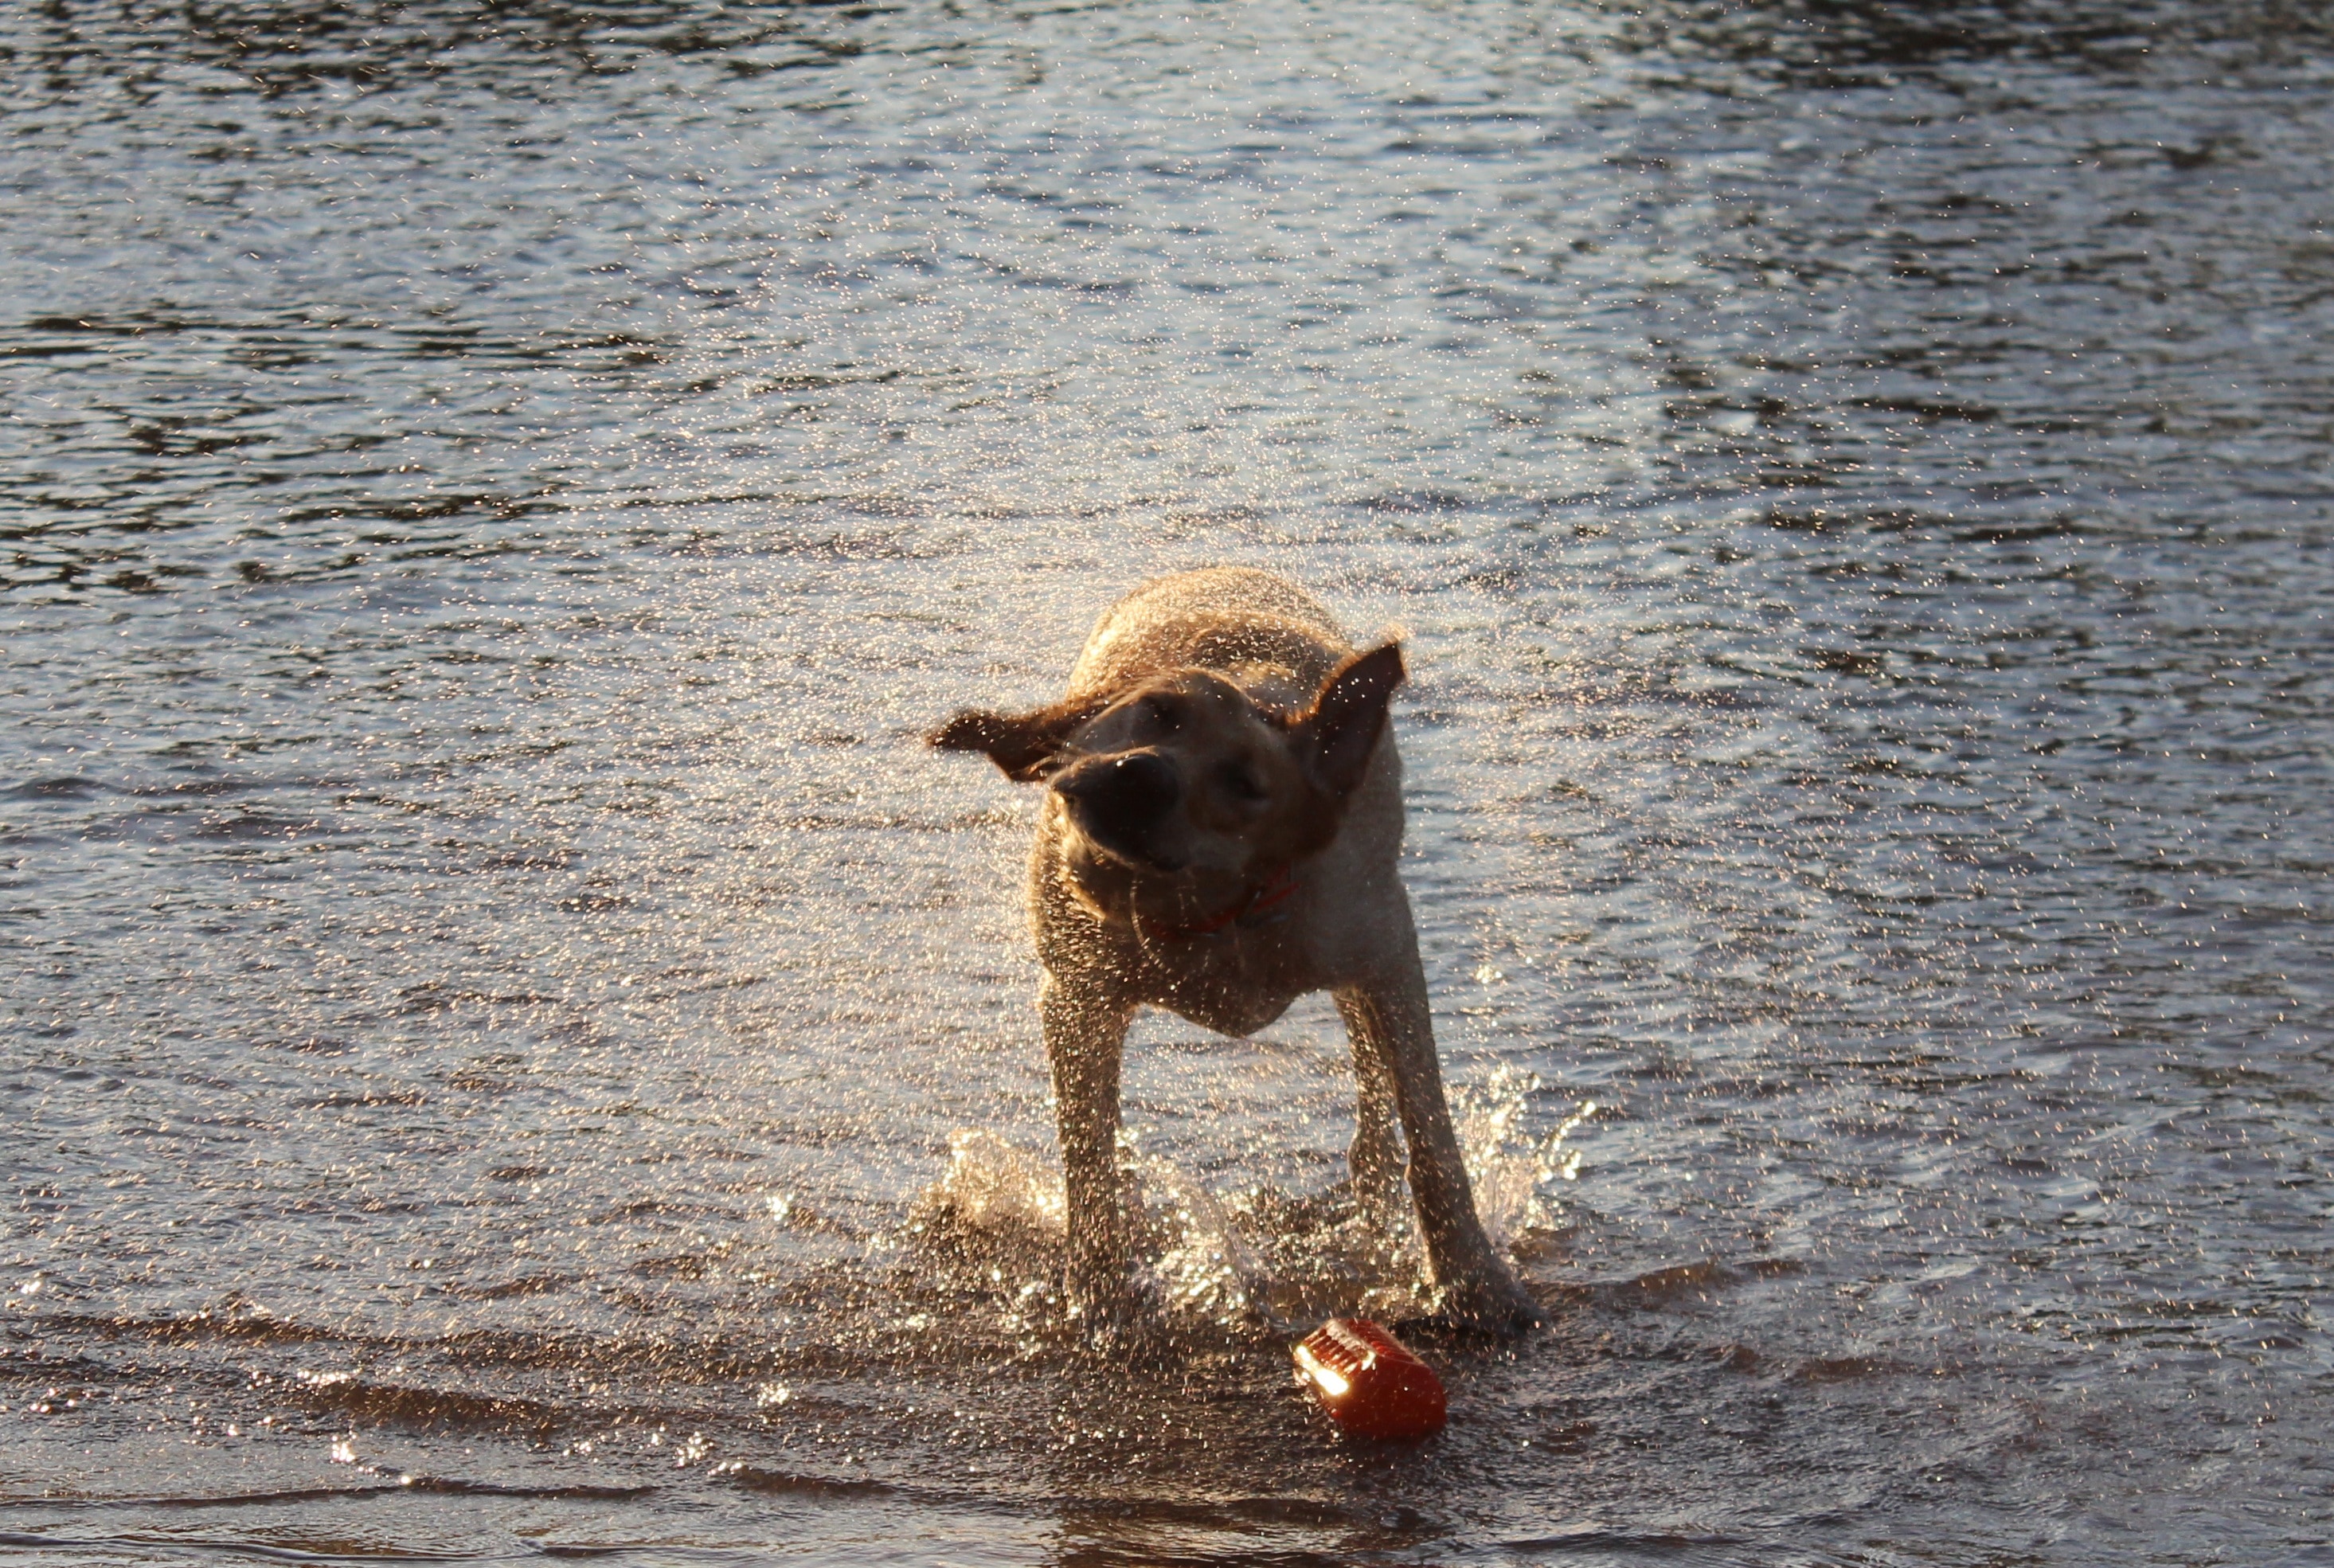 Labradore, Water, Dog, Swimming, dog, one animal